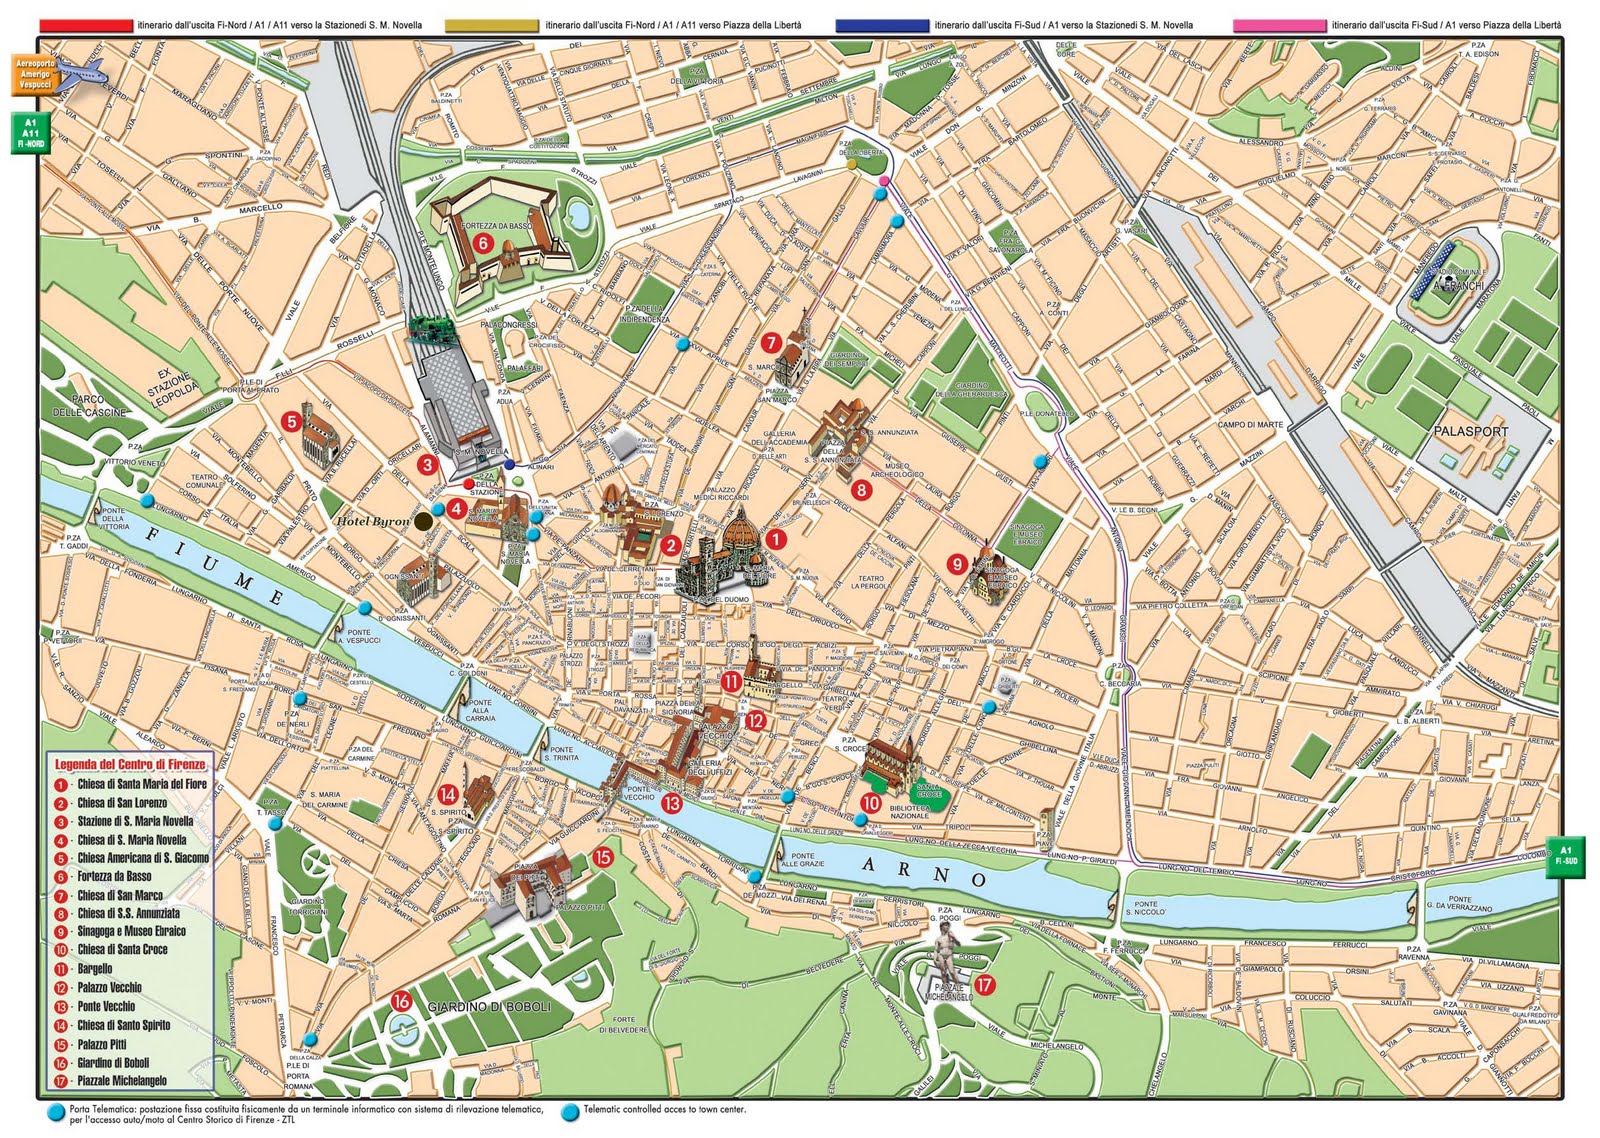 Tô indo para a Itália: Mapa turístico - Florença